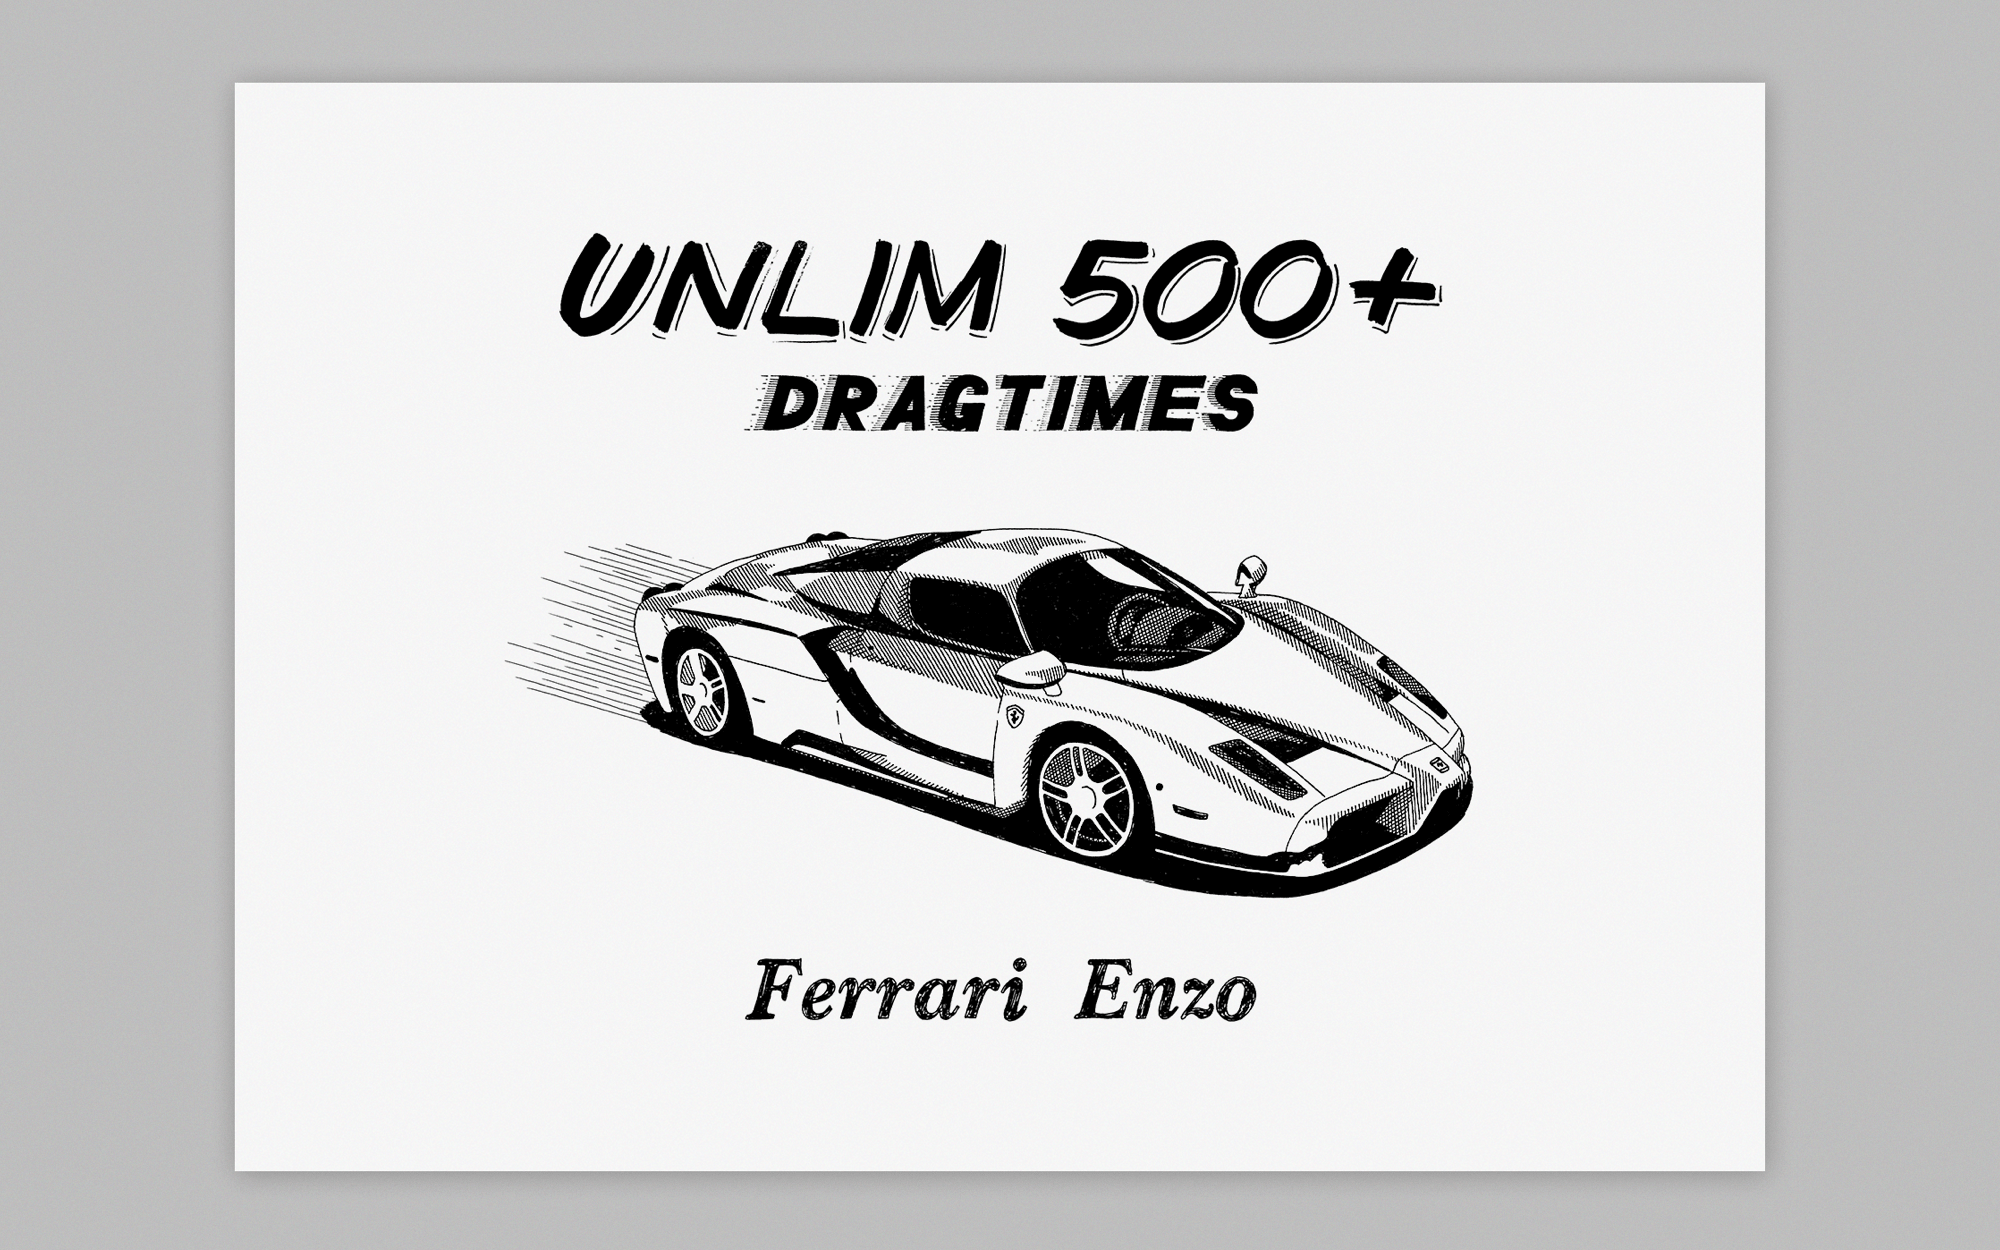 Иллюстрация с Ferrari Enzo для Unlim 500+